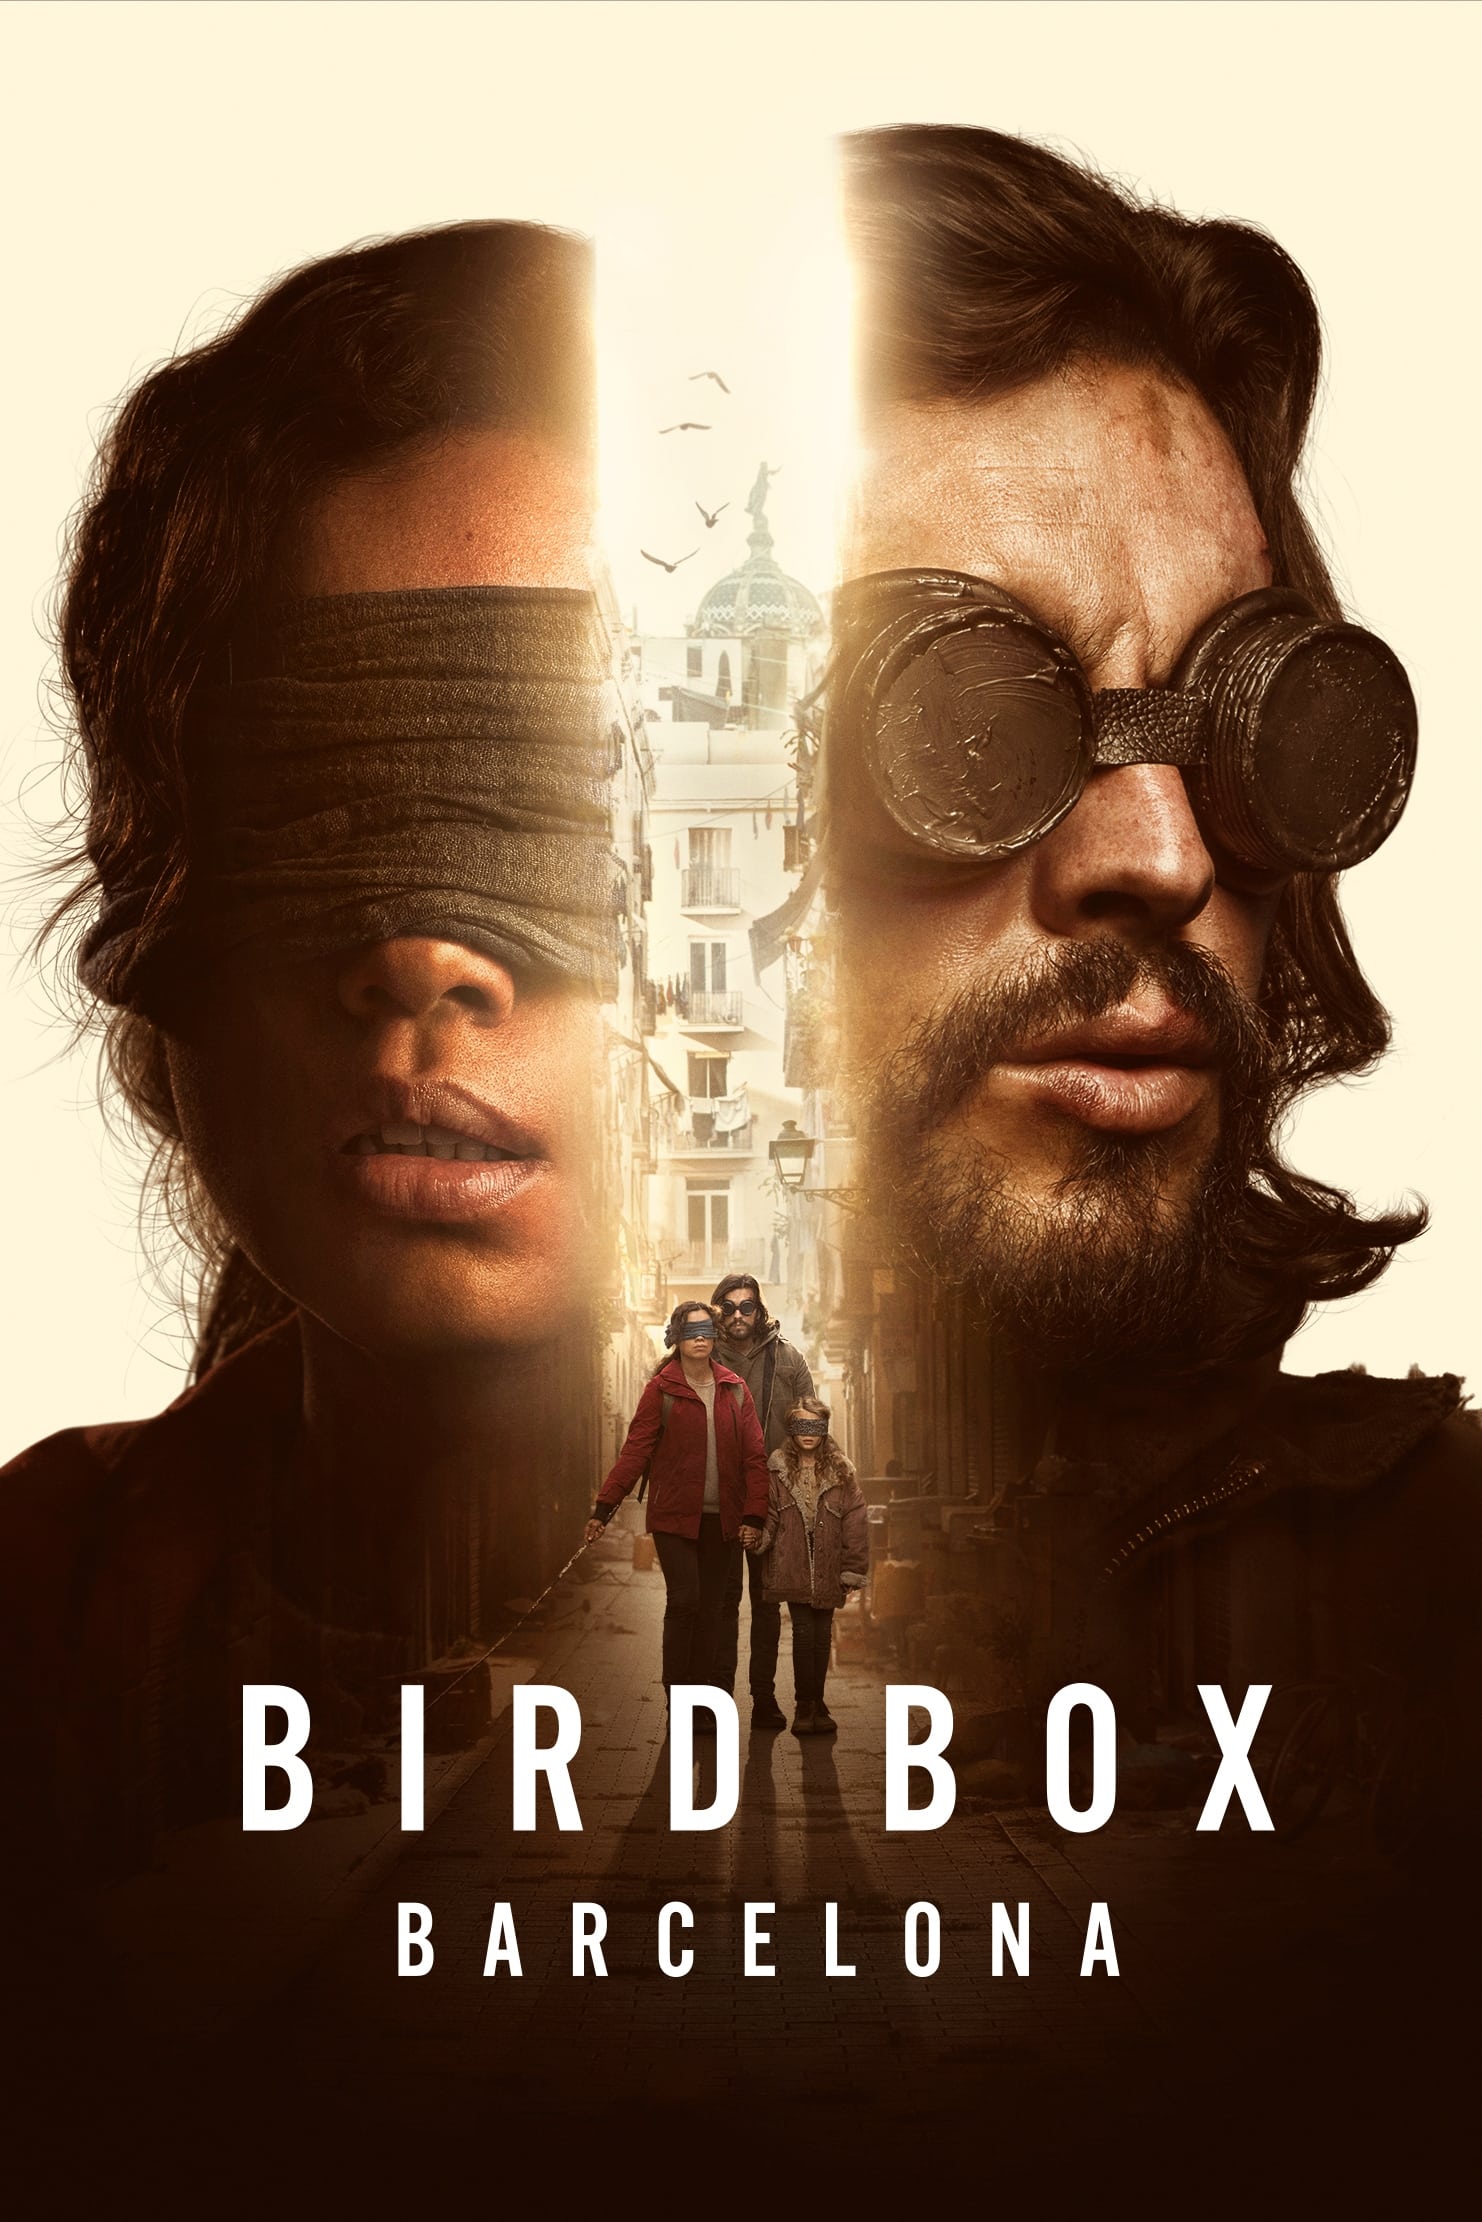 مشاهدة فيلم bird box barcelona مترجم 2023 كامل على ايجي بست